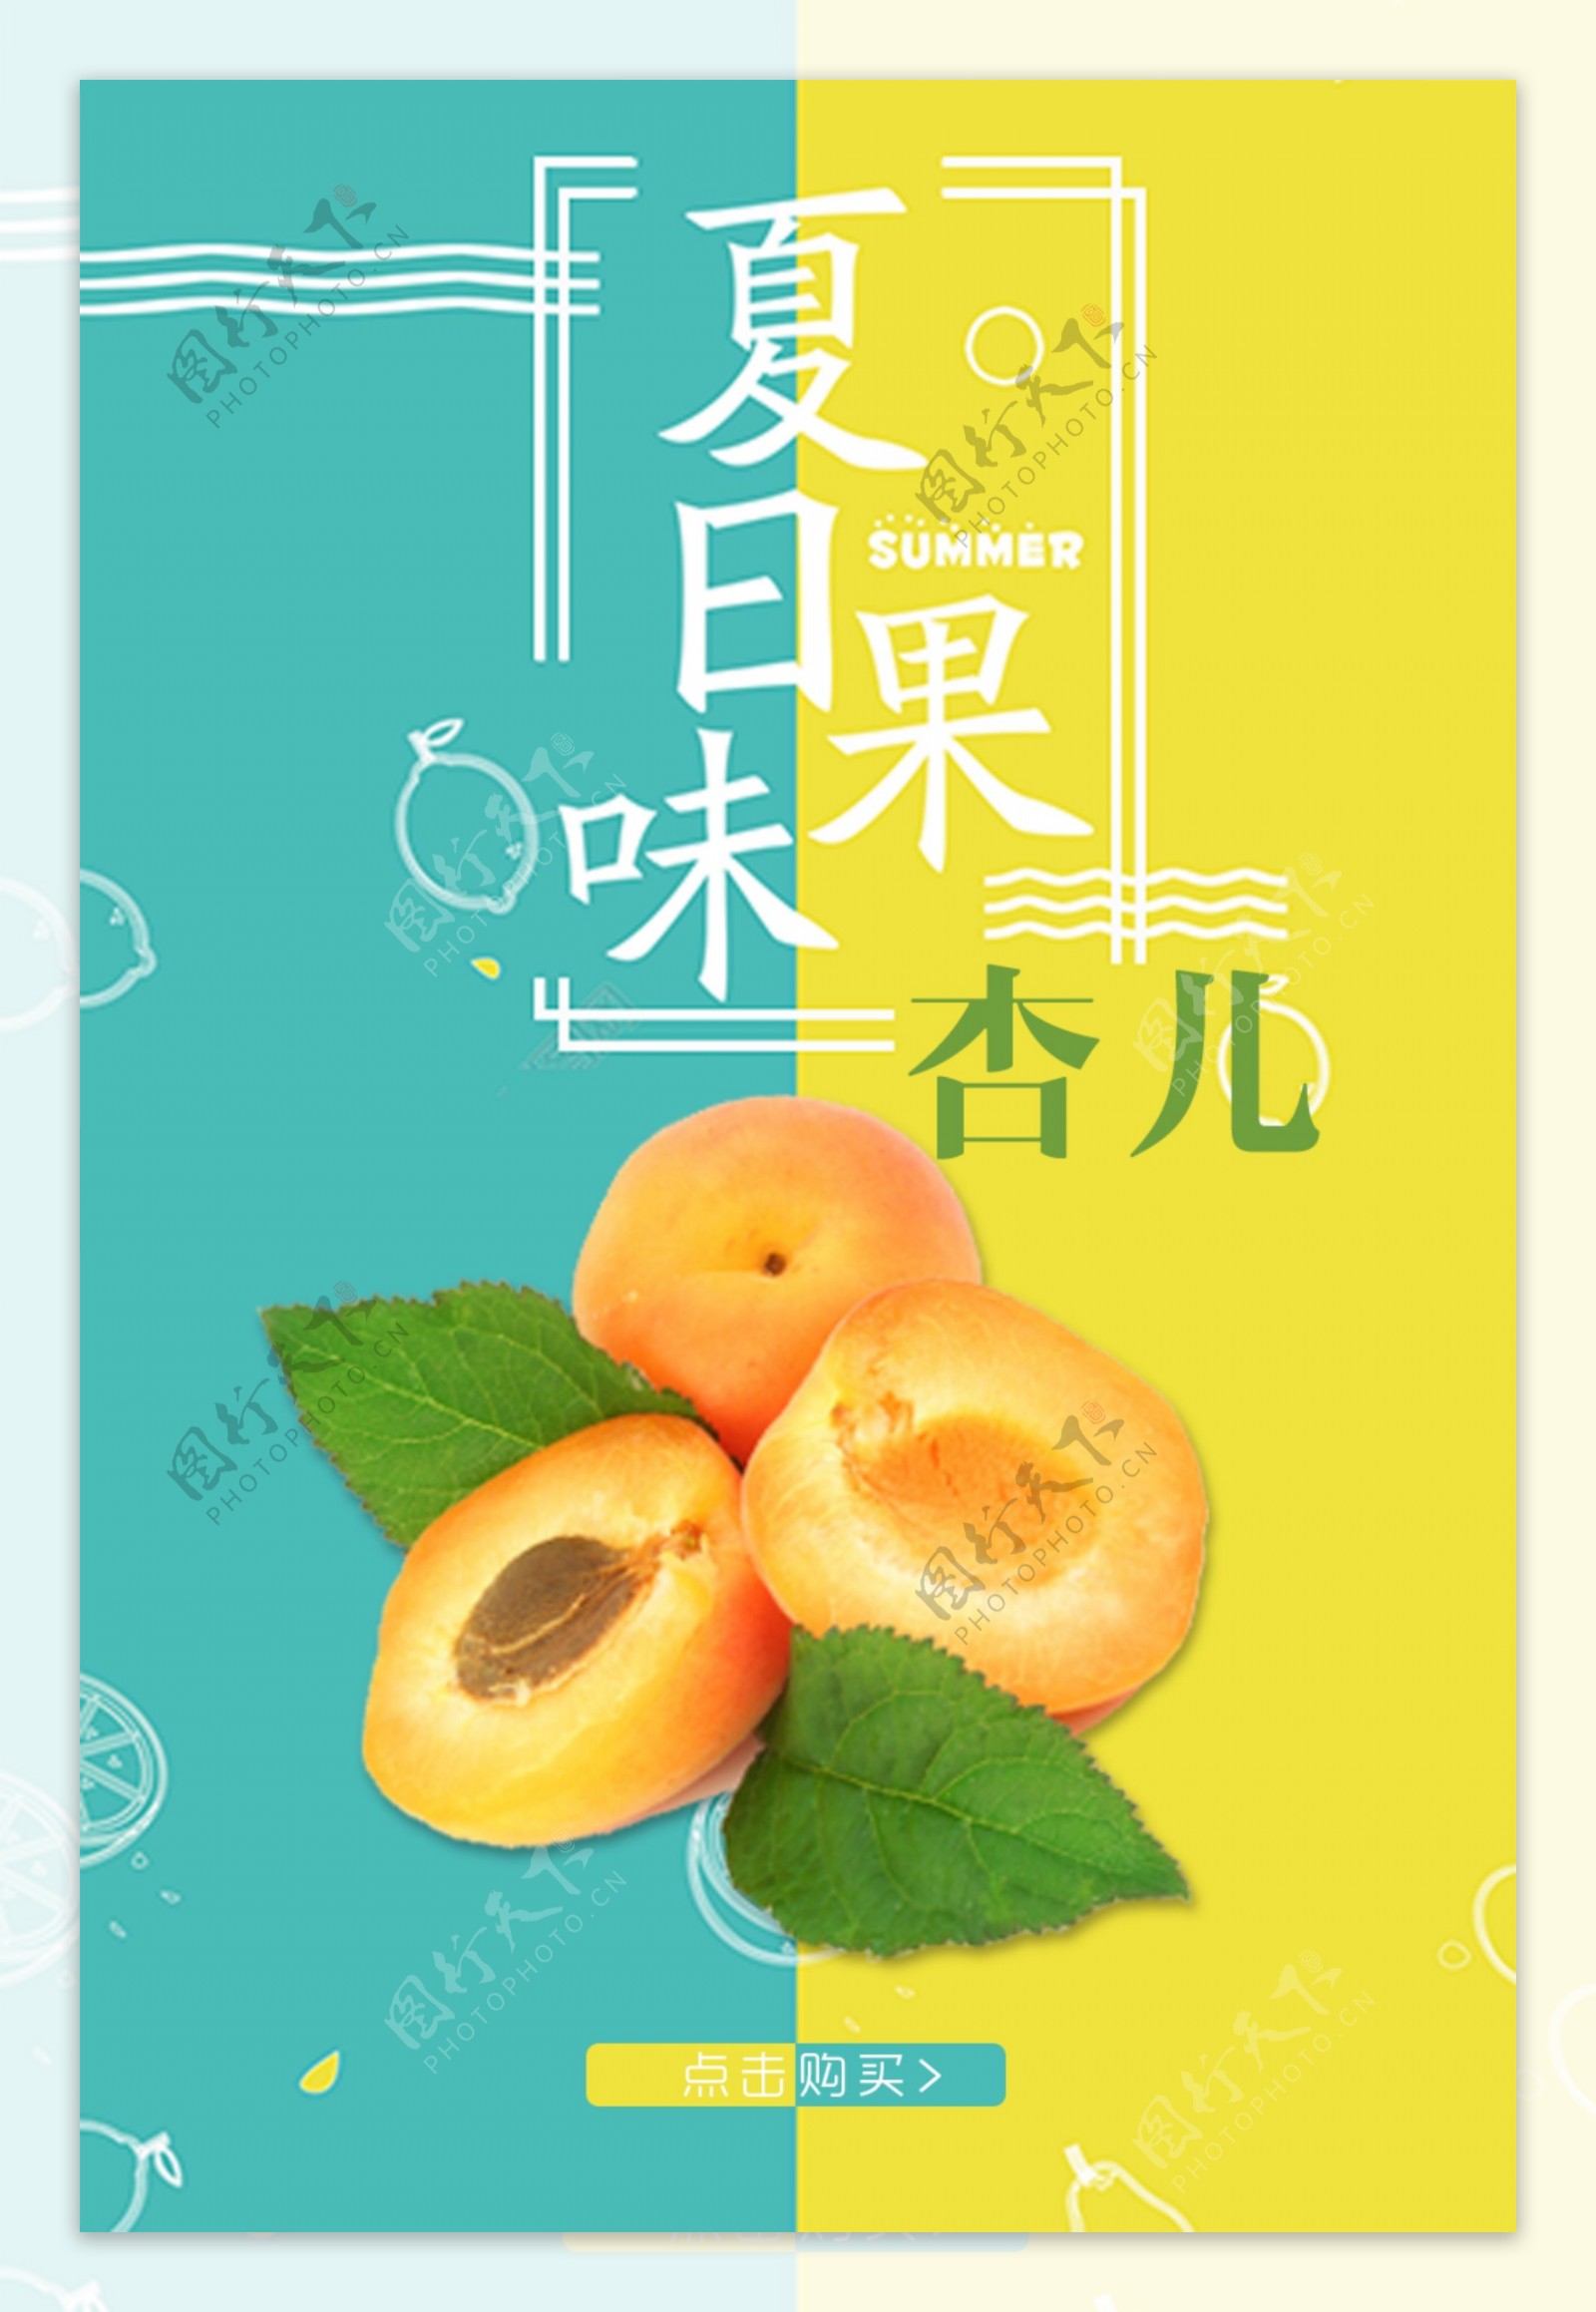 杏儿水果撞色创意促销水果店海报